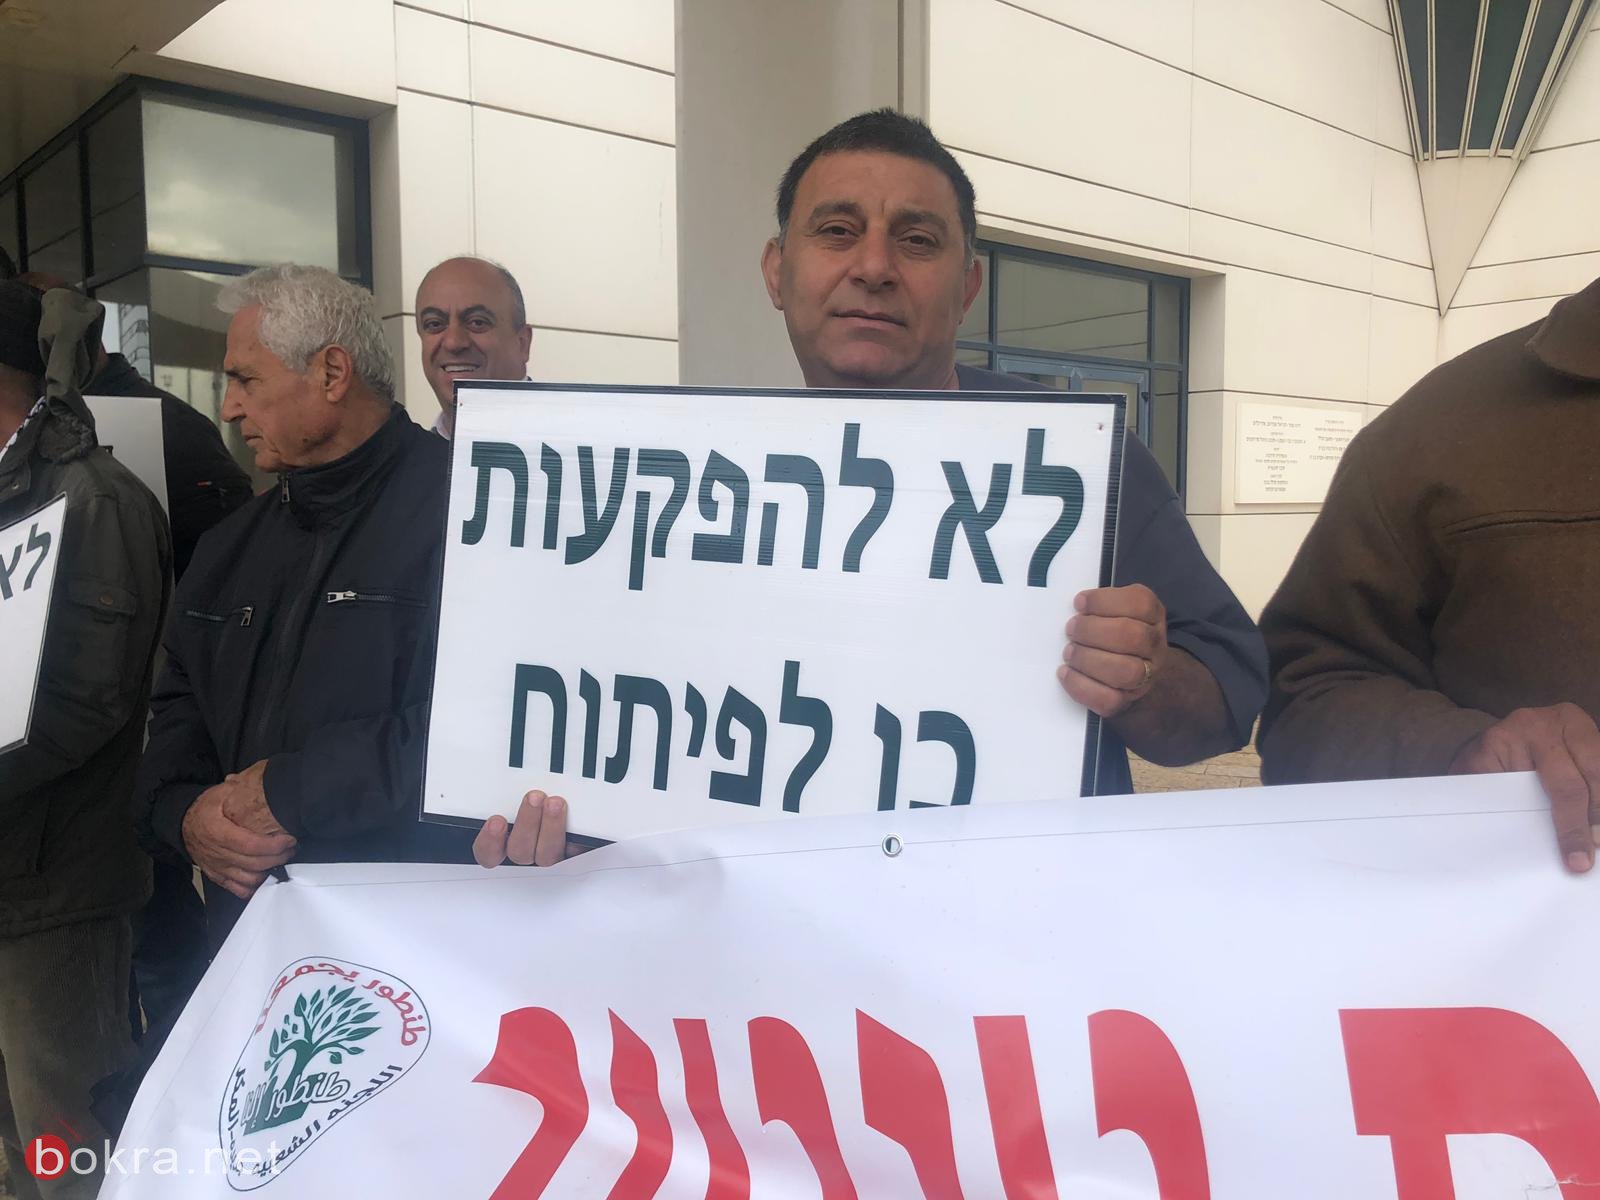 حيفا: اهالي الجديدة - المكر يتظاهرون قبالة وزارة الاسكان ضدّ مخطّط طنطور -19